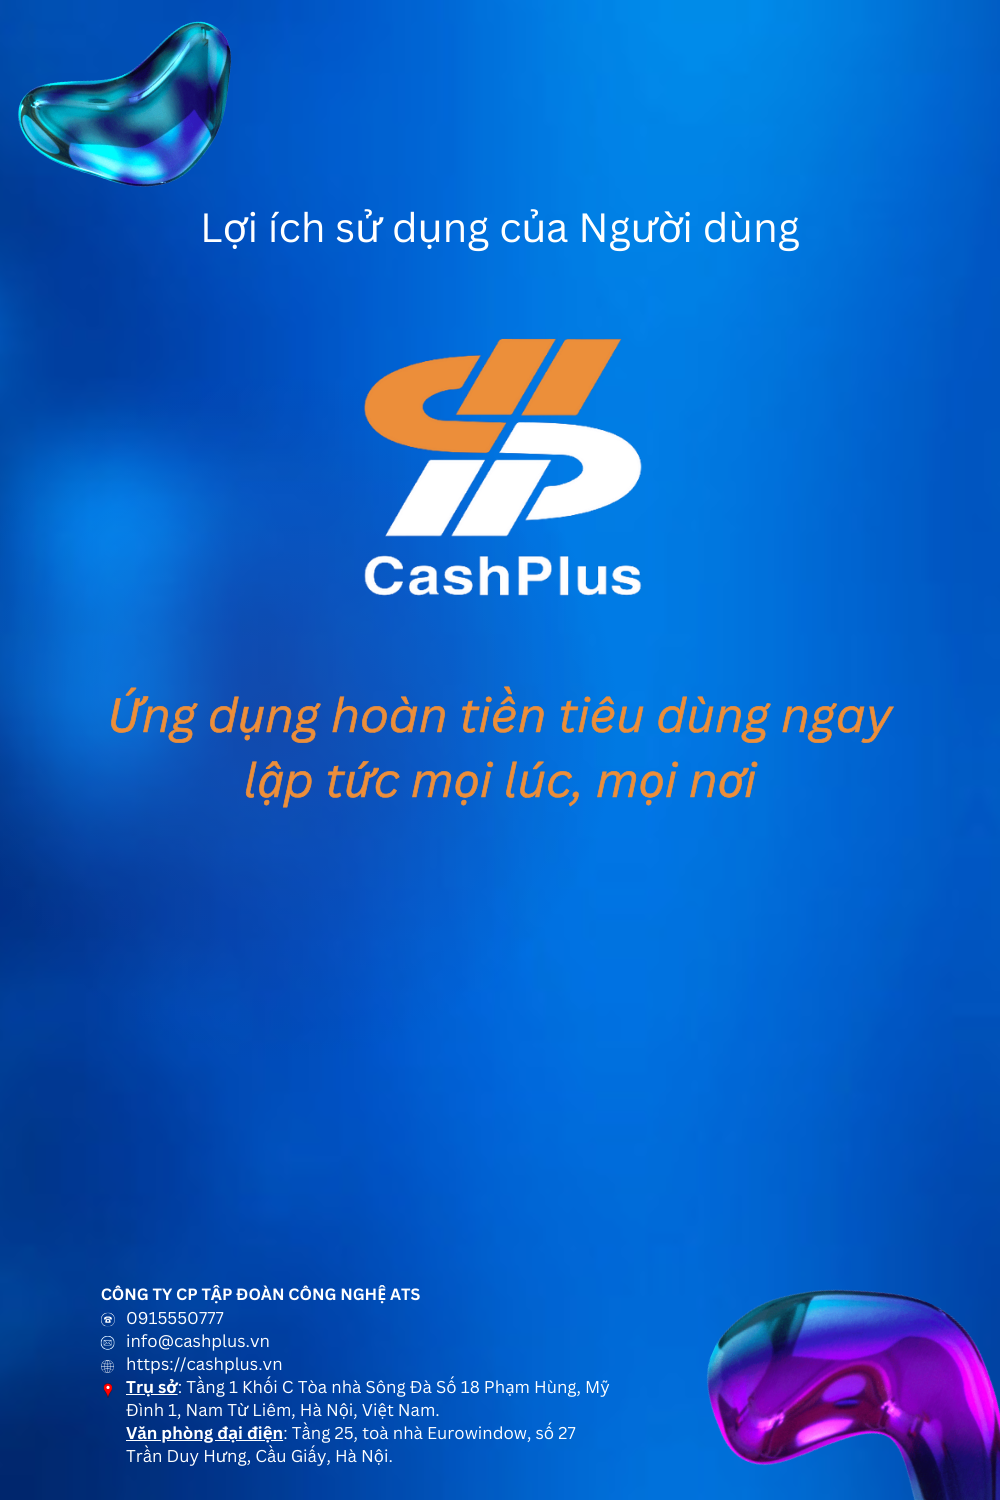 Lợi ích người dùng app CashPlus